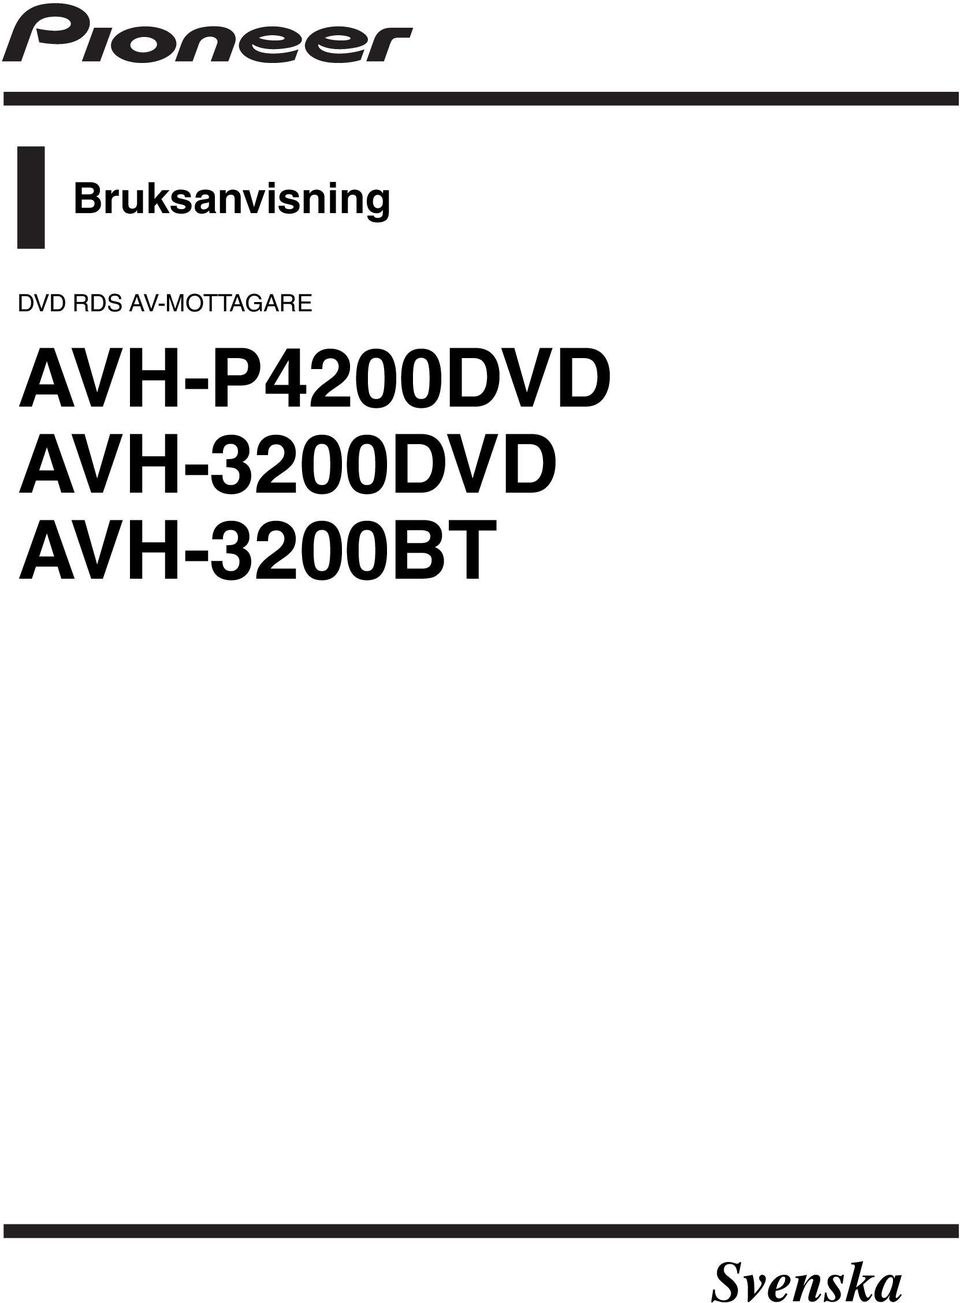 AVH-P4200DVD